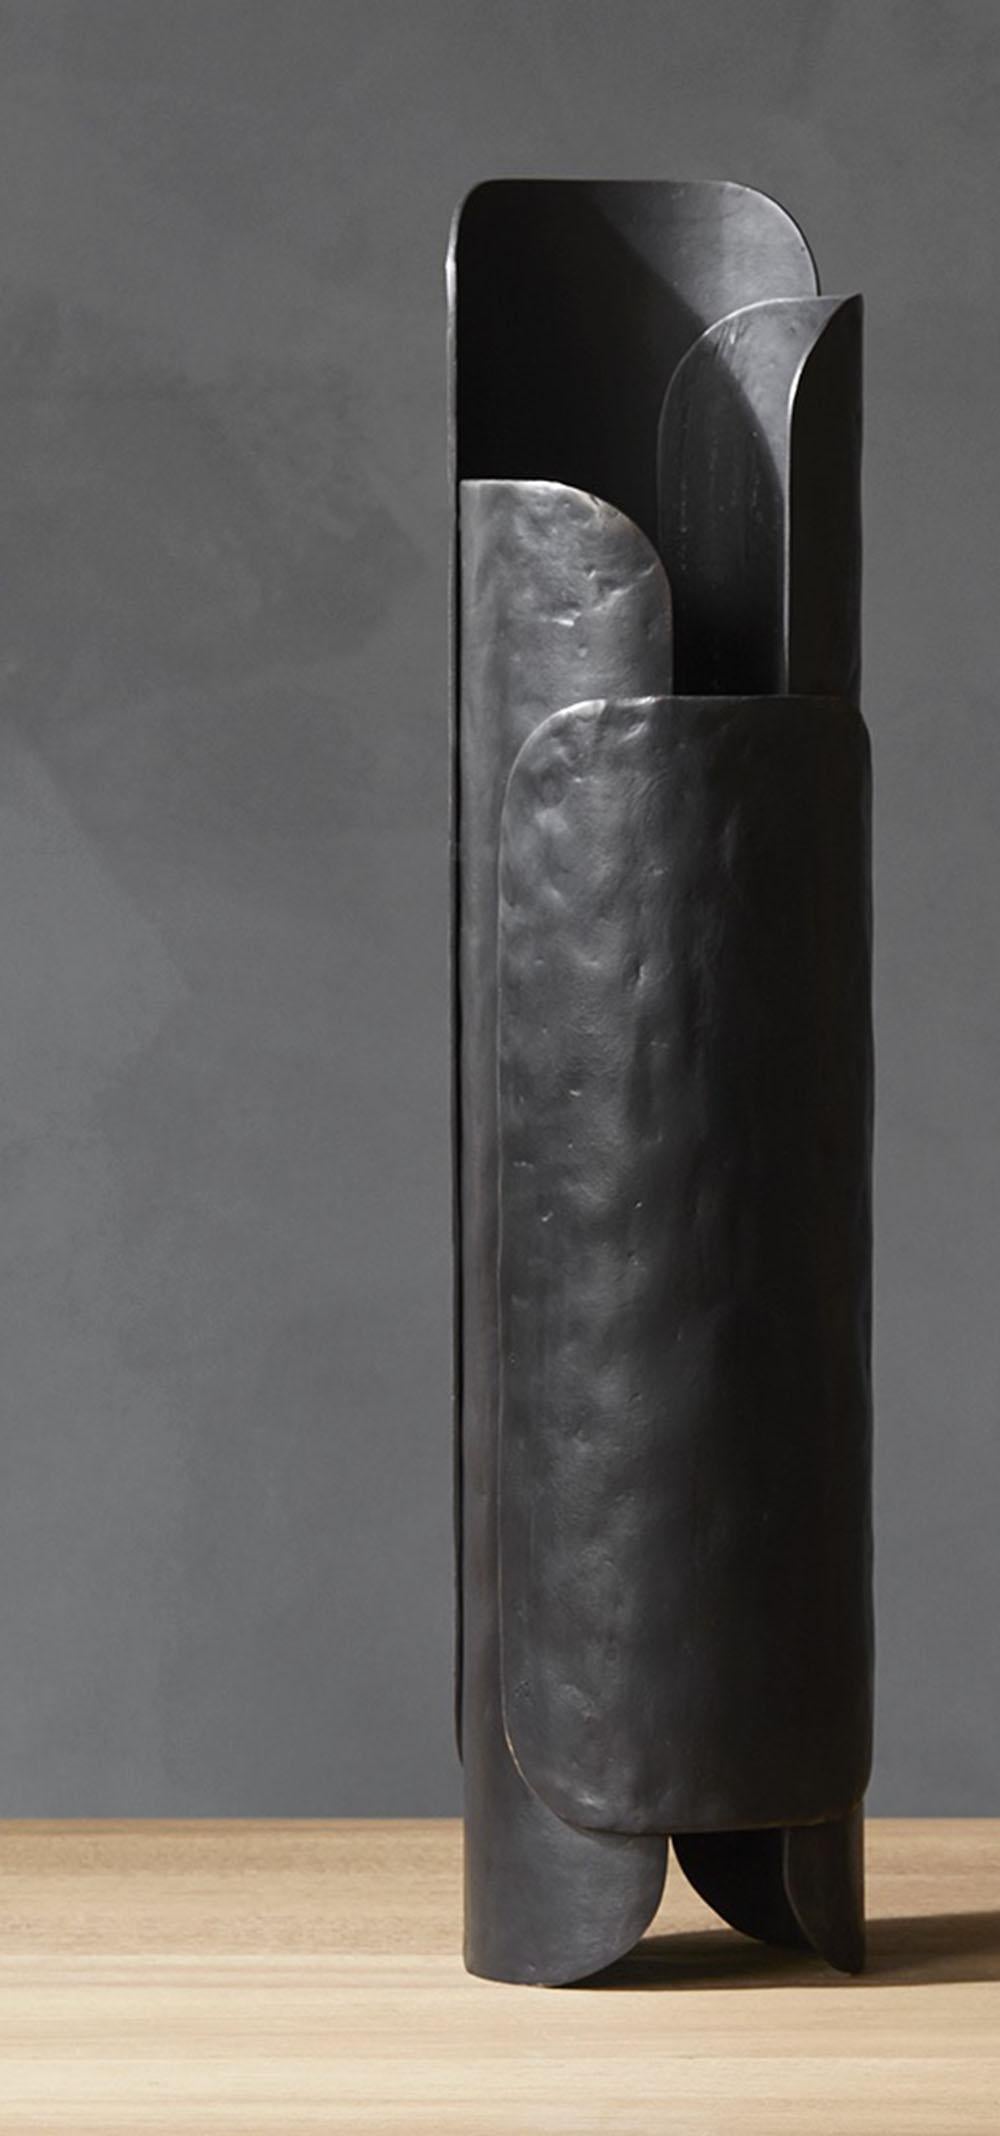 Conçu par Dan Yeffet pour Collection Particulière, Leaf est un élégant vase en bronze patiné noir avec insert en acier inoxydable.
Dimensions : vase (haut) : Ø 20 x h 77 cm (insert : Ø 16 x h 36 cm)
Matériaux : bronze / insert en acier inoxydable